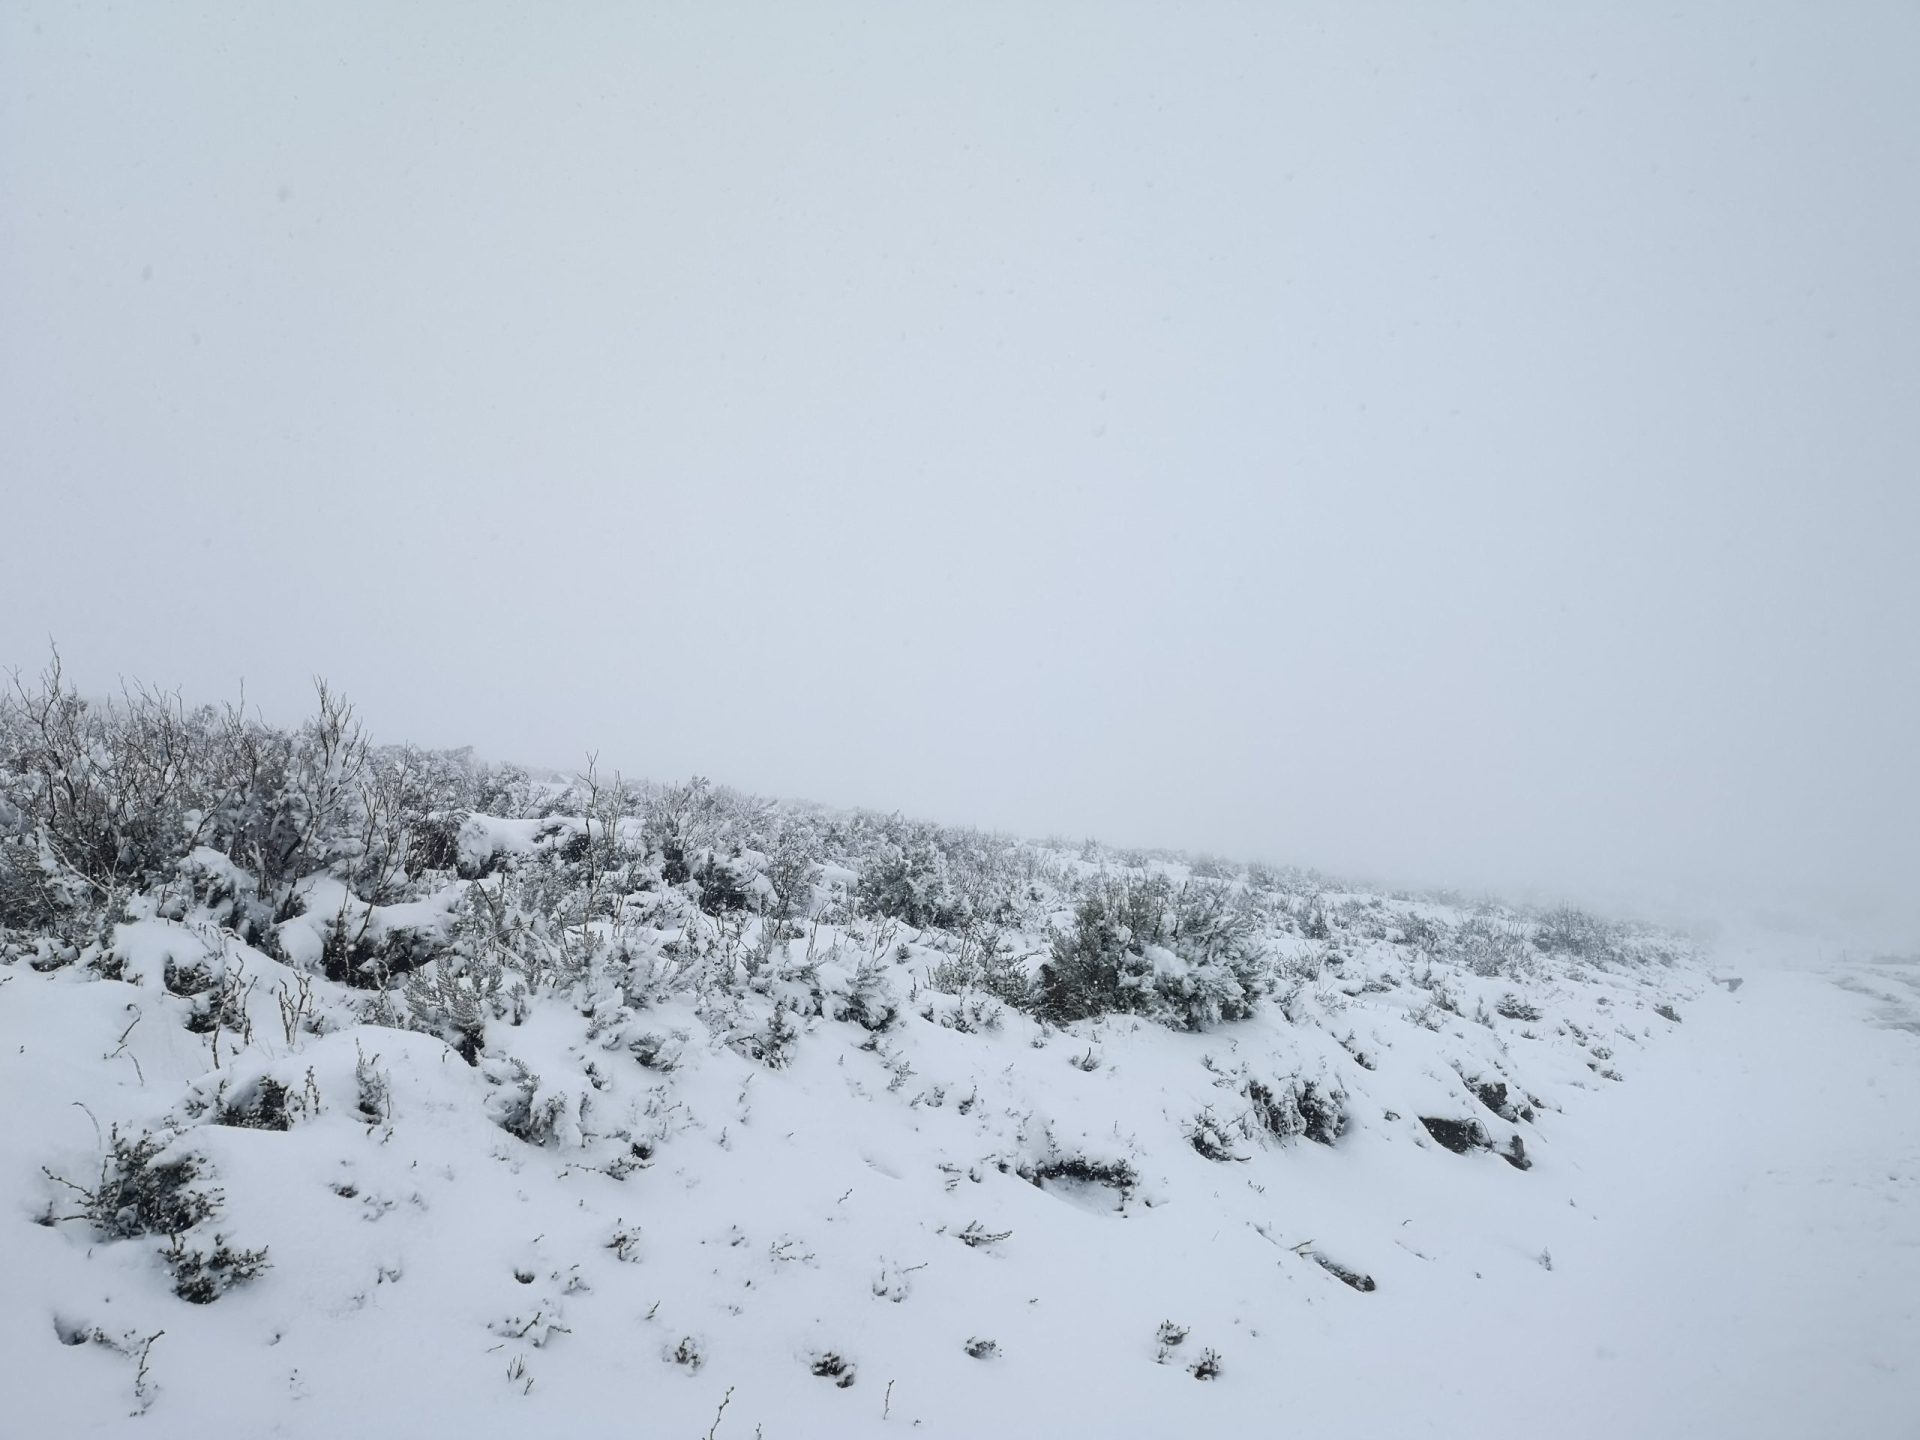 Neve pinta Serra da Cabreira de branco | Fotogaleria